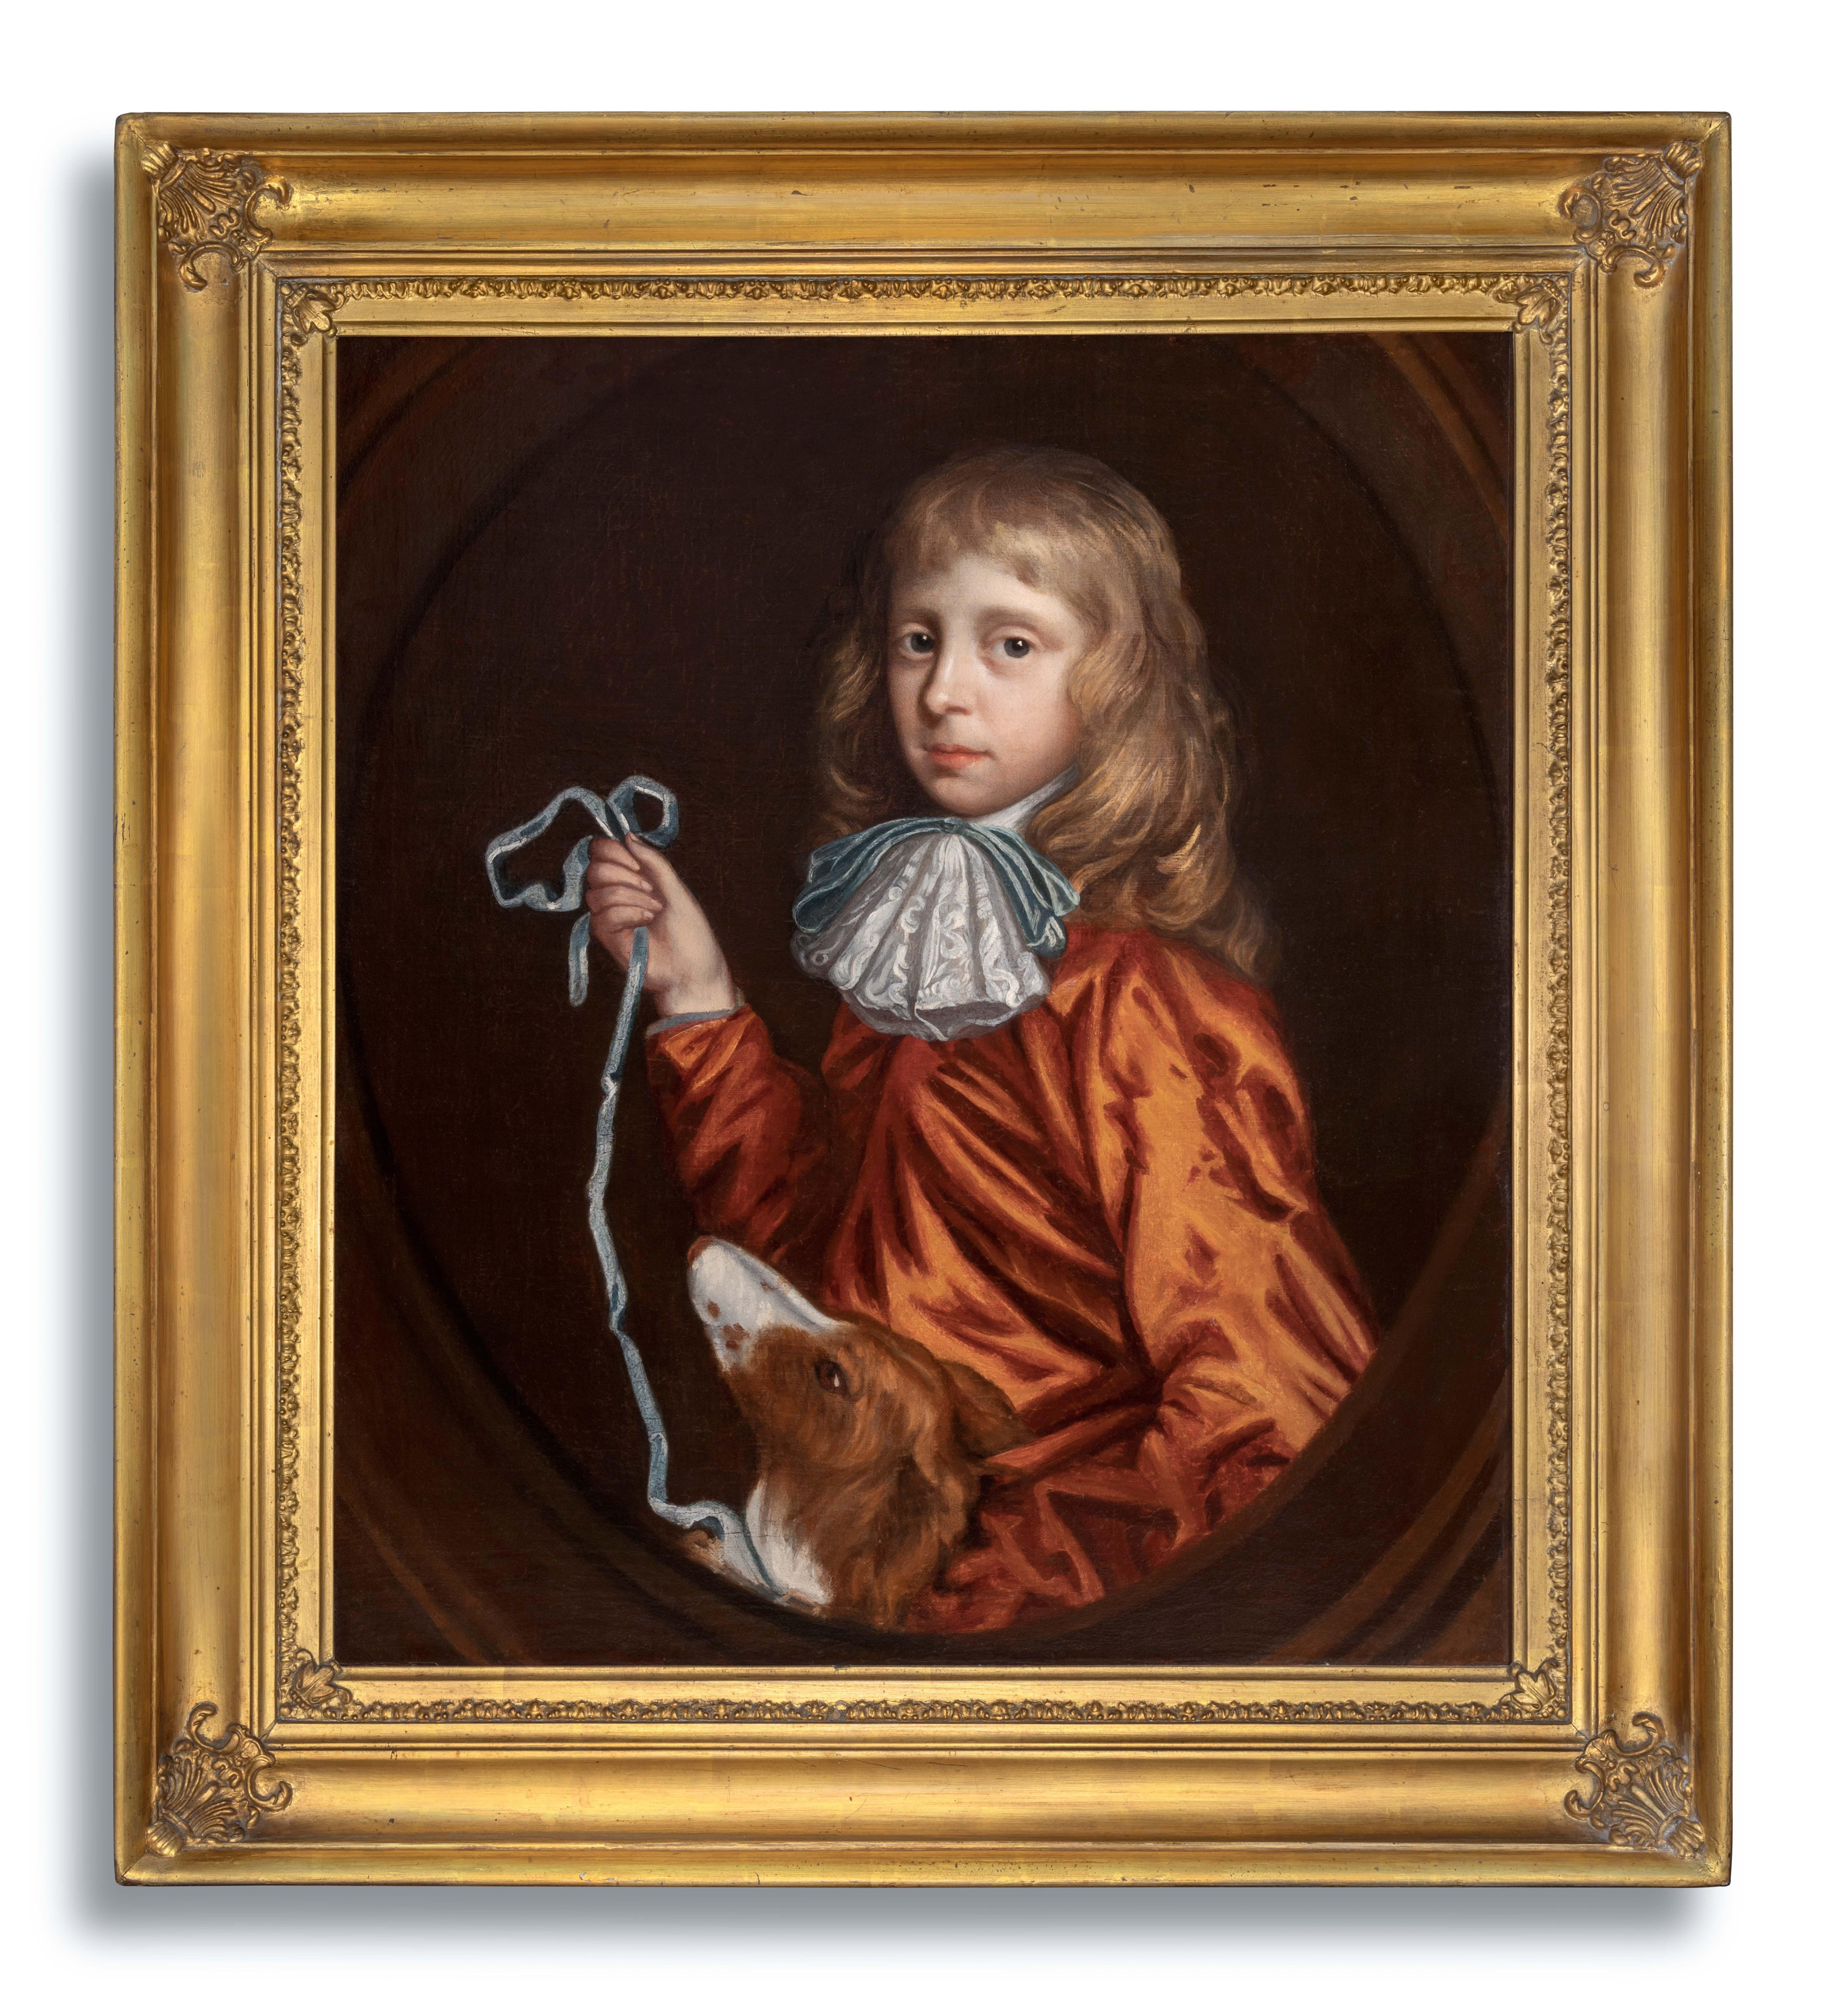 Portrait Painting (Circle of) Mary Beale - Portrait d'un jeune homme et d'un chien de compagnie, vers 1680, peinture à l'huile ancienne sur toile